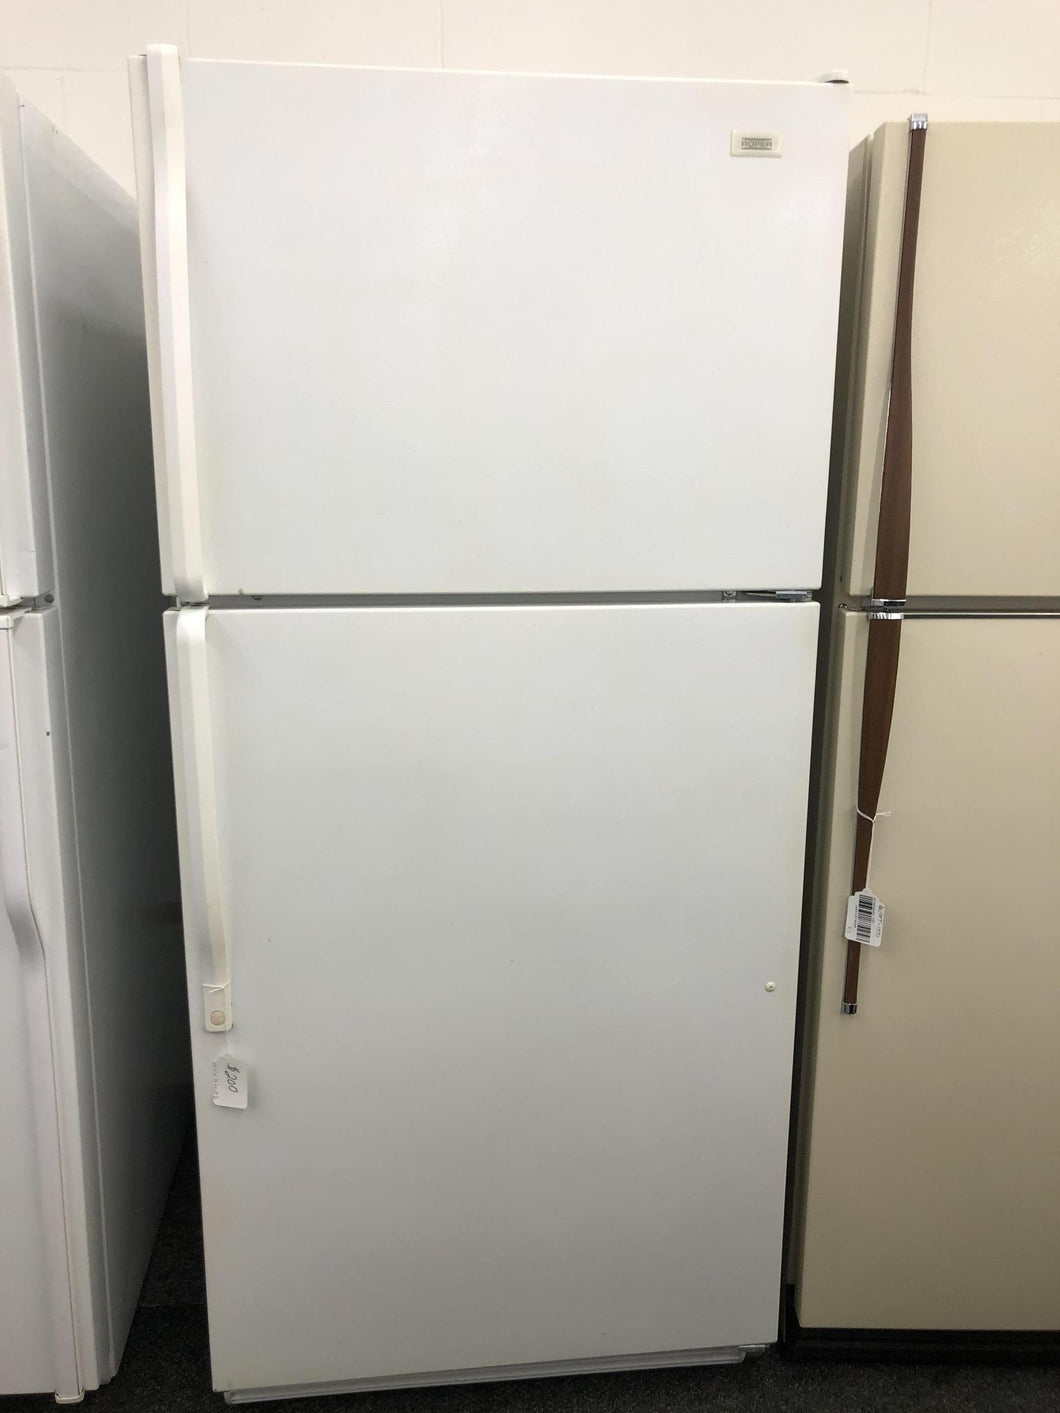 Whirlpool Refrigerator 1807